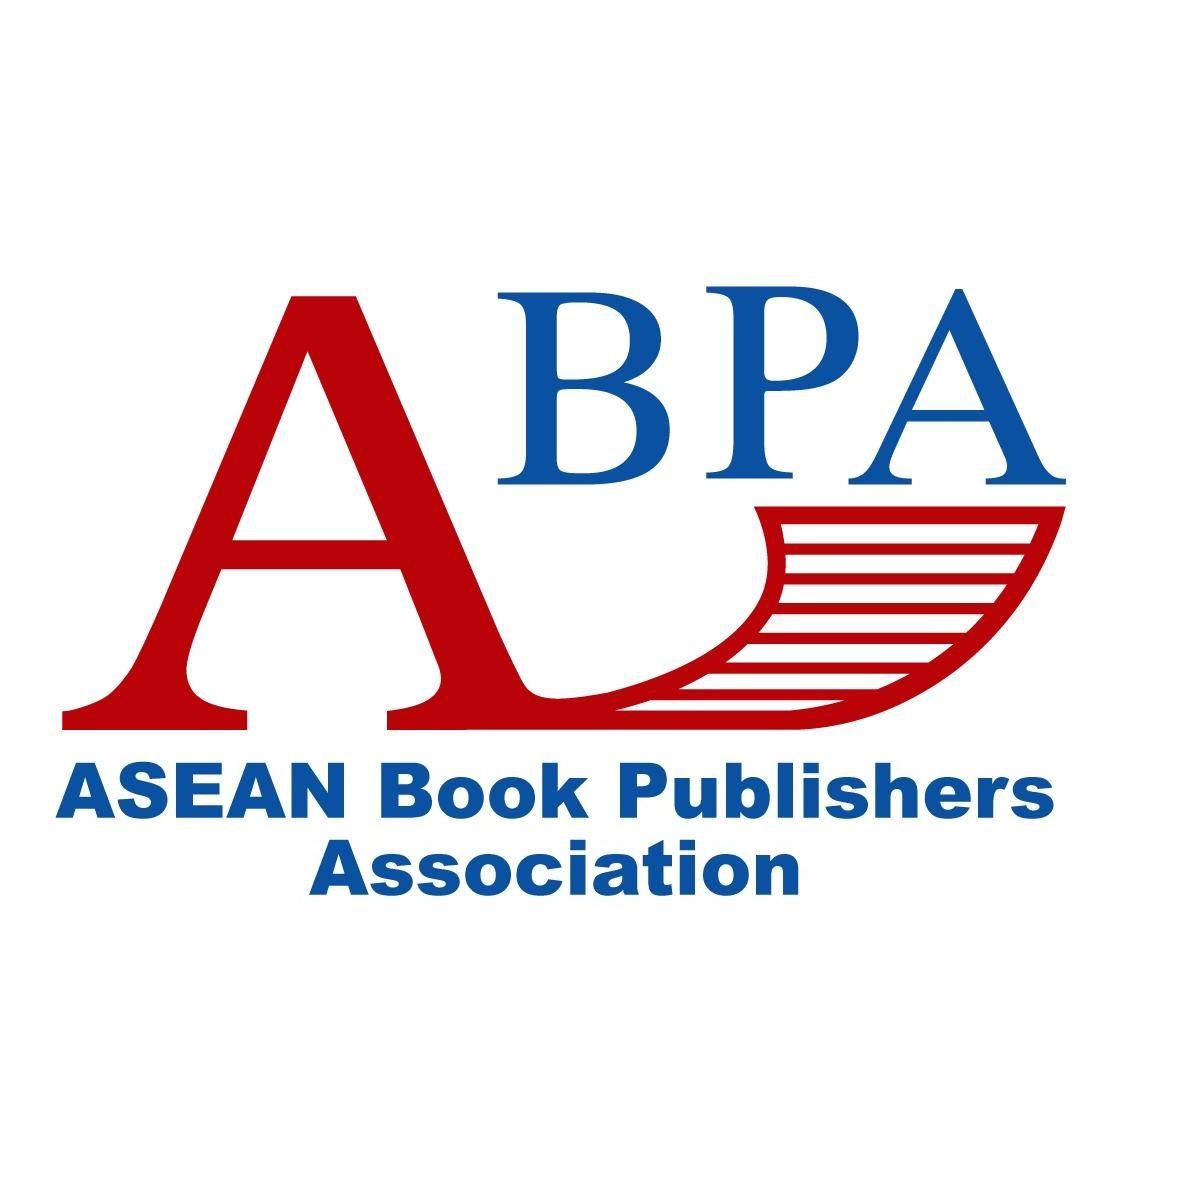 Hiệp hội Xuất bản Đông Nam Á (ABPA) là cộng đồng thân thiện, nơi hợp tác, chia sẻ, trao đổi kinh nghiệm của các nhà xuất bản ở khu vực Đông Nam Á và các đối tác trong ngành